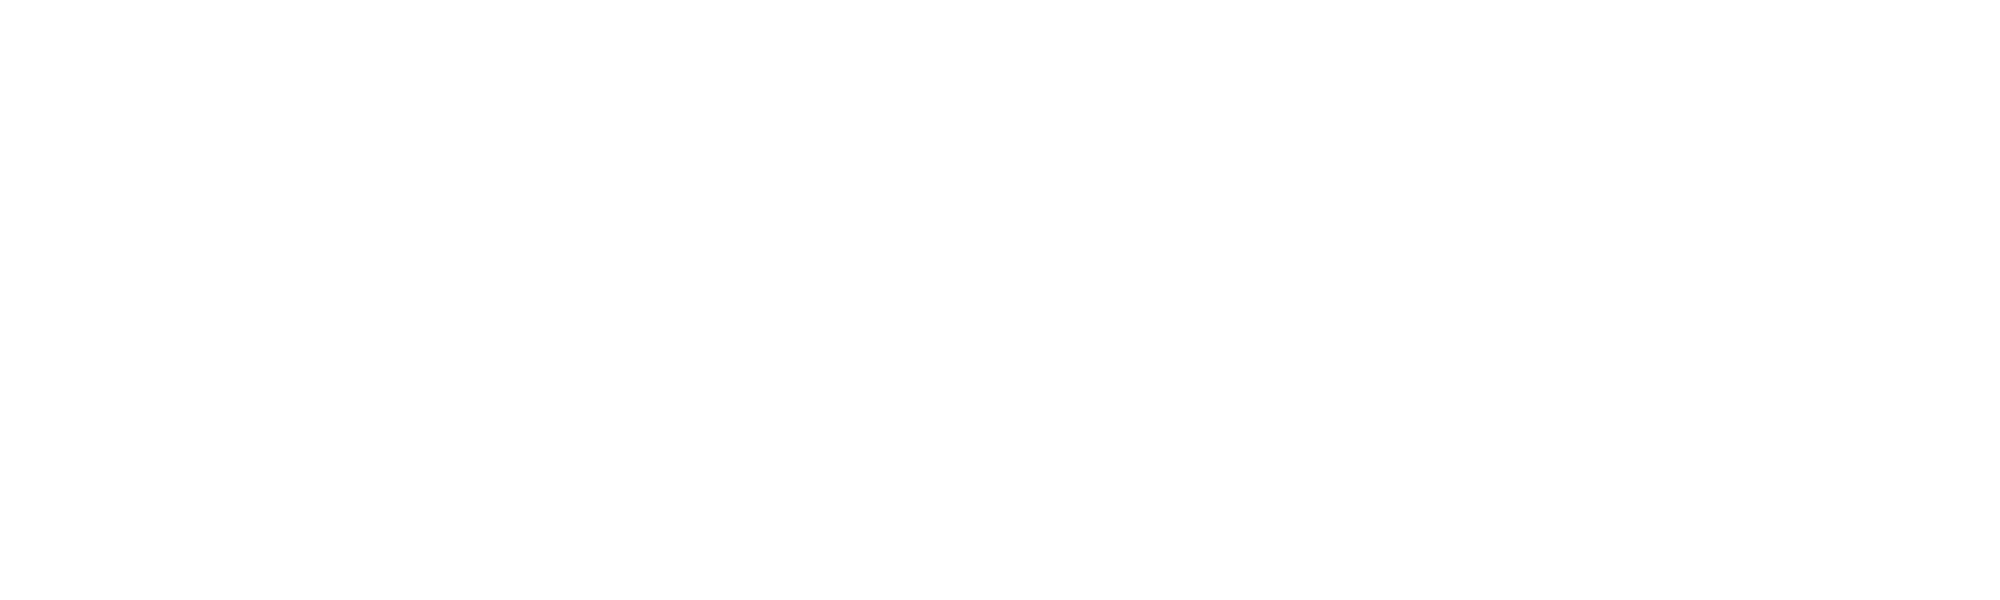 Atrin Sanat Logo